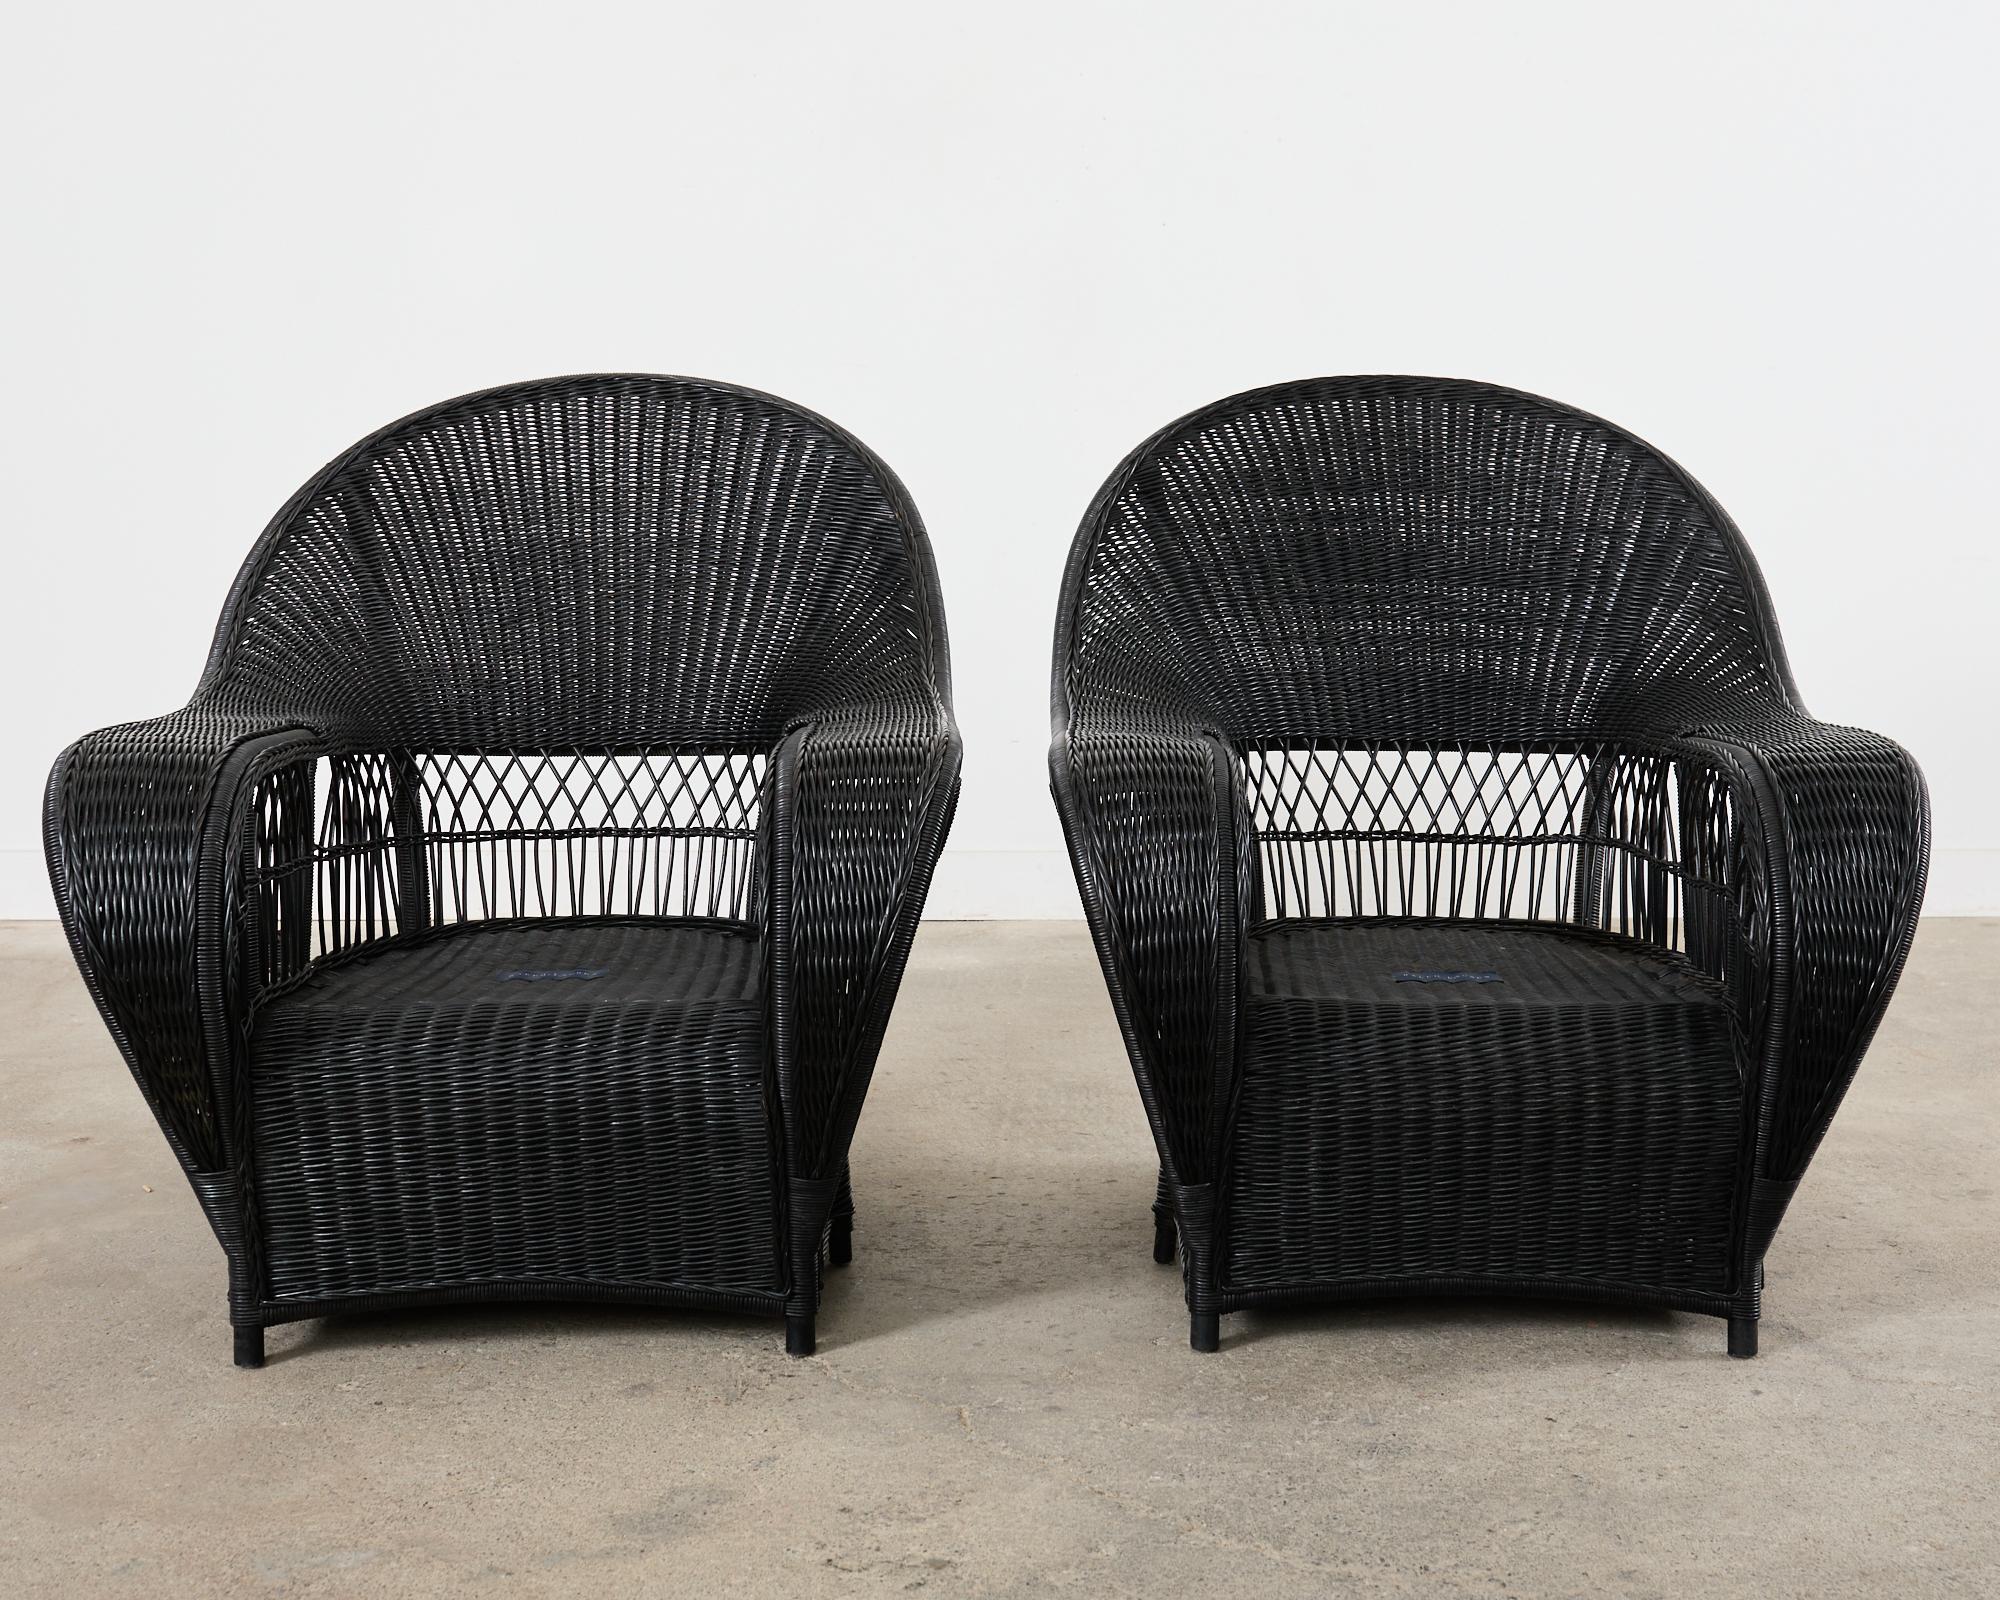 Dramatique paire de fauteuils de salon de jardin en osier ébonisé conçue par Ralph Lauren. Ces chaises rares sont dotées d'un cadre en rotin surdimensionné agrémenté d'osier tressé. Les cadres gracieusement incurvés ont des dossiers épais de style